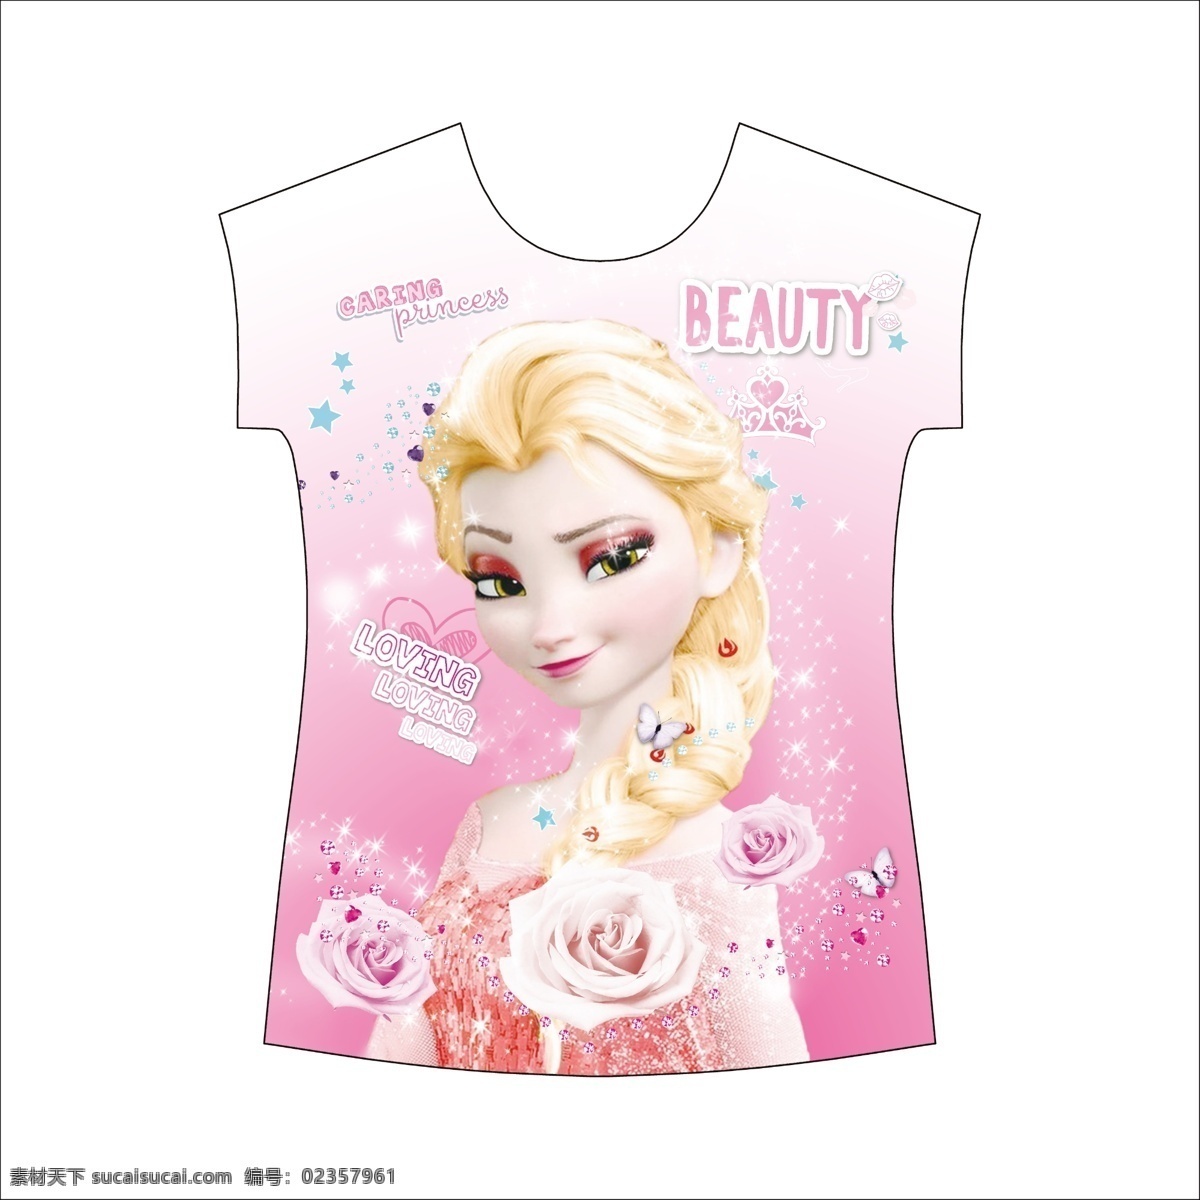 冰雪公主 服装上衣 花纹 背景 衣服 t恤女孩 花朵 服装设计 生活百科 生活用品